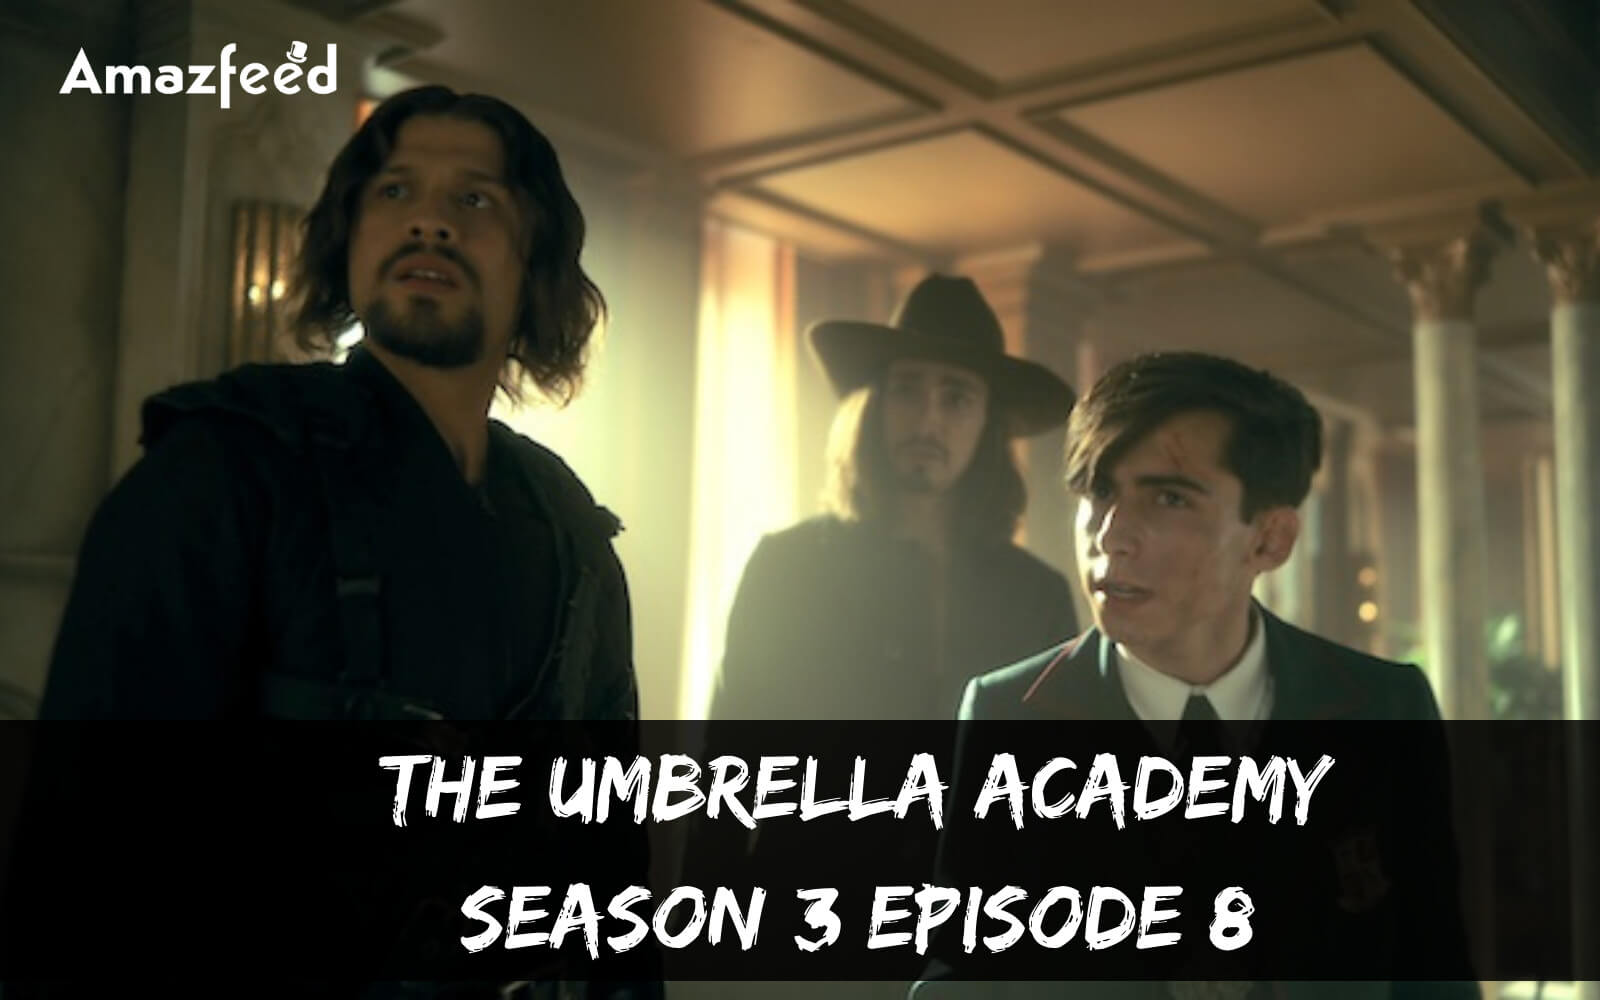 The Umbrella Academy season 3 Episode 8 release date